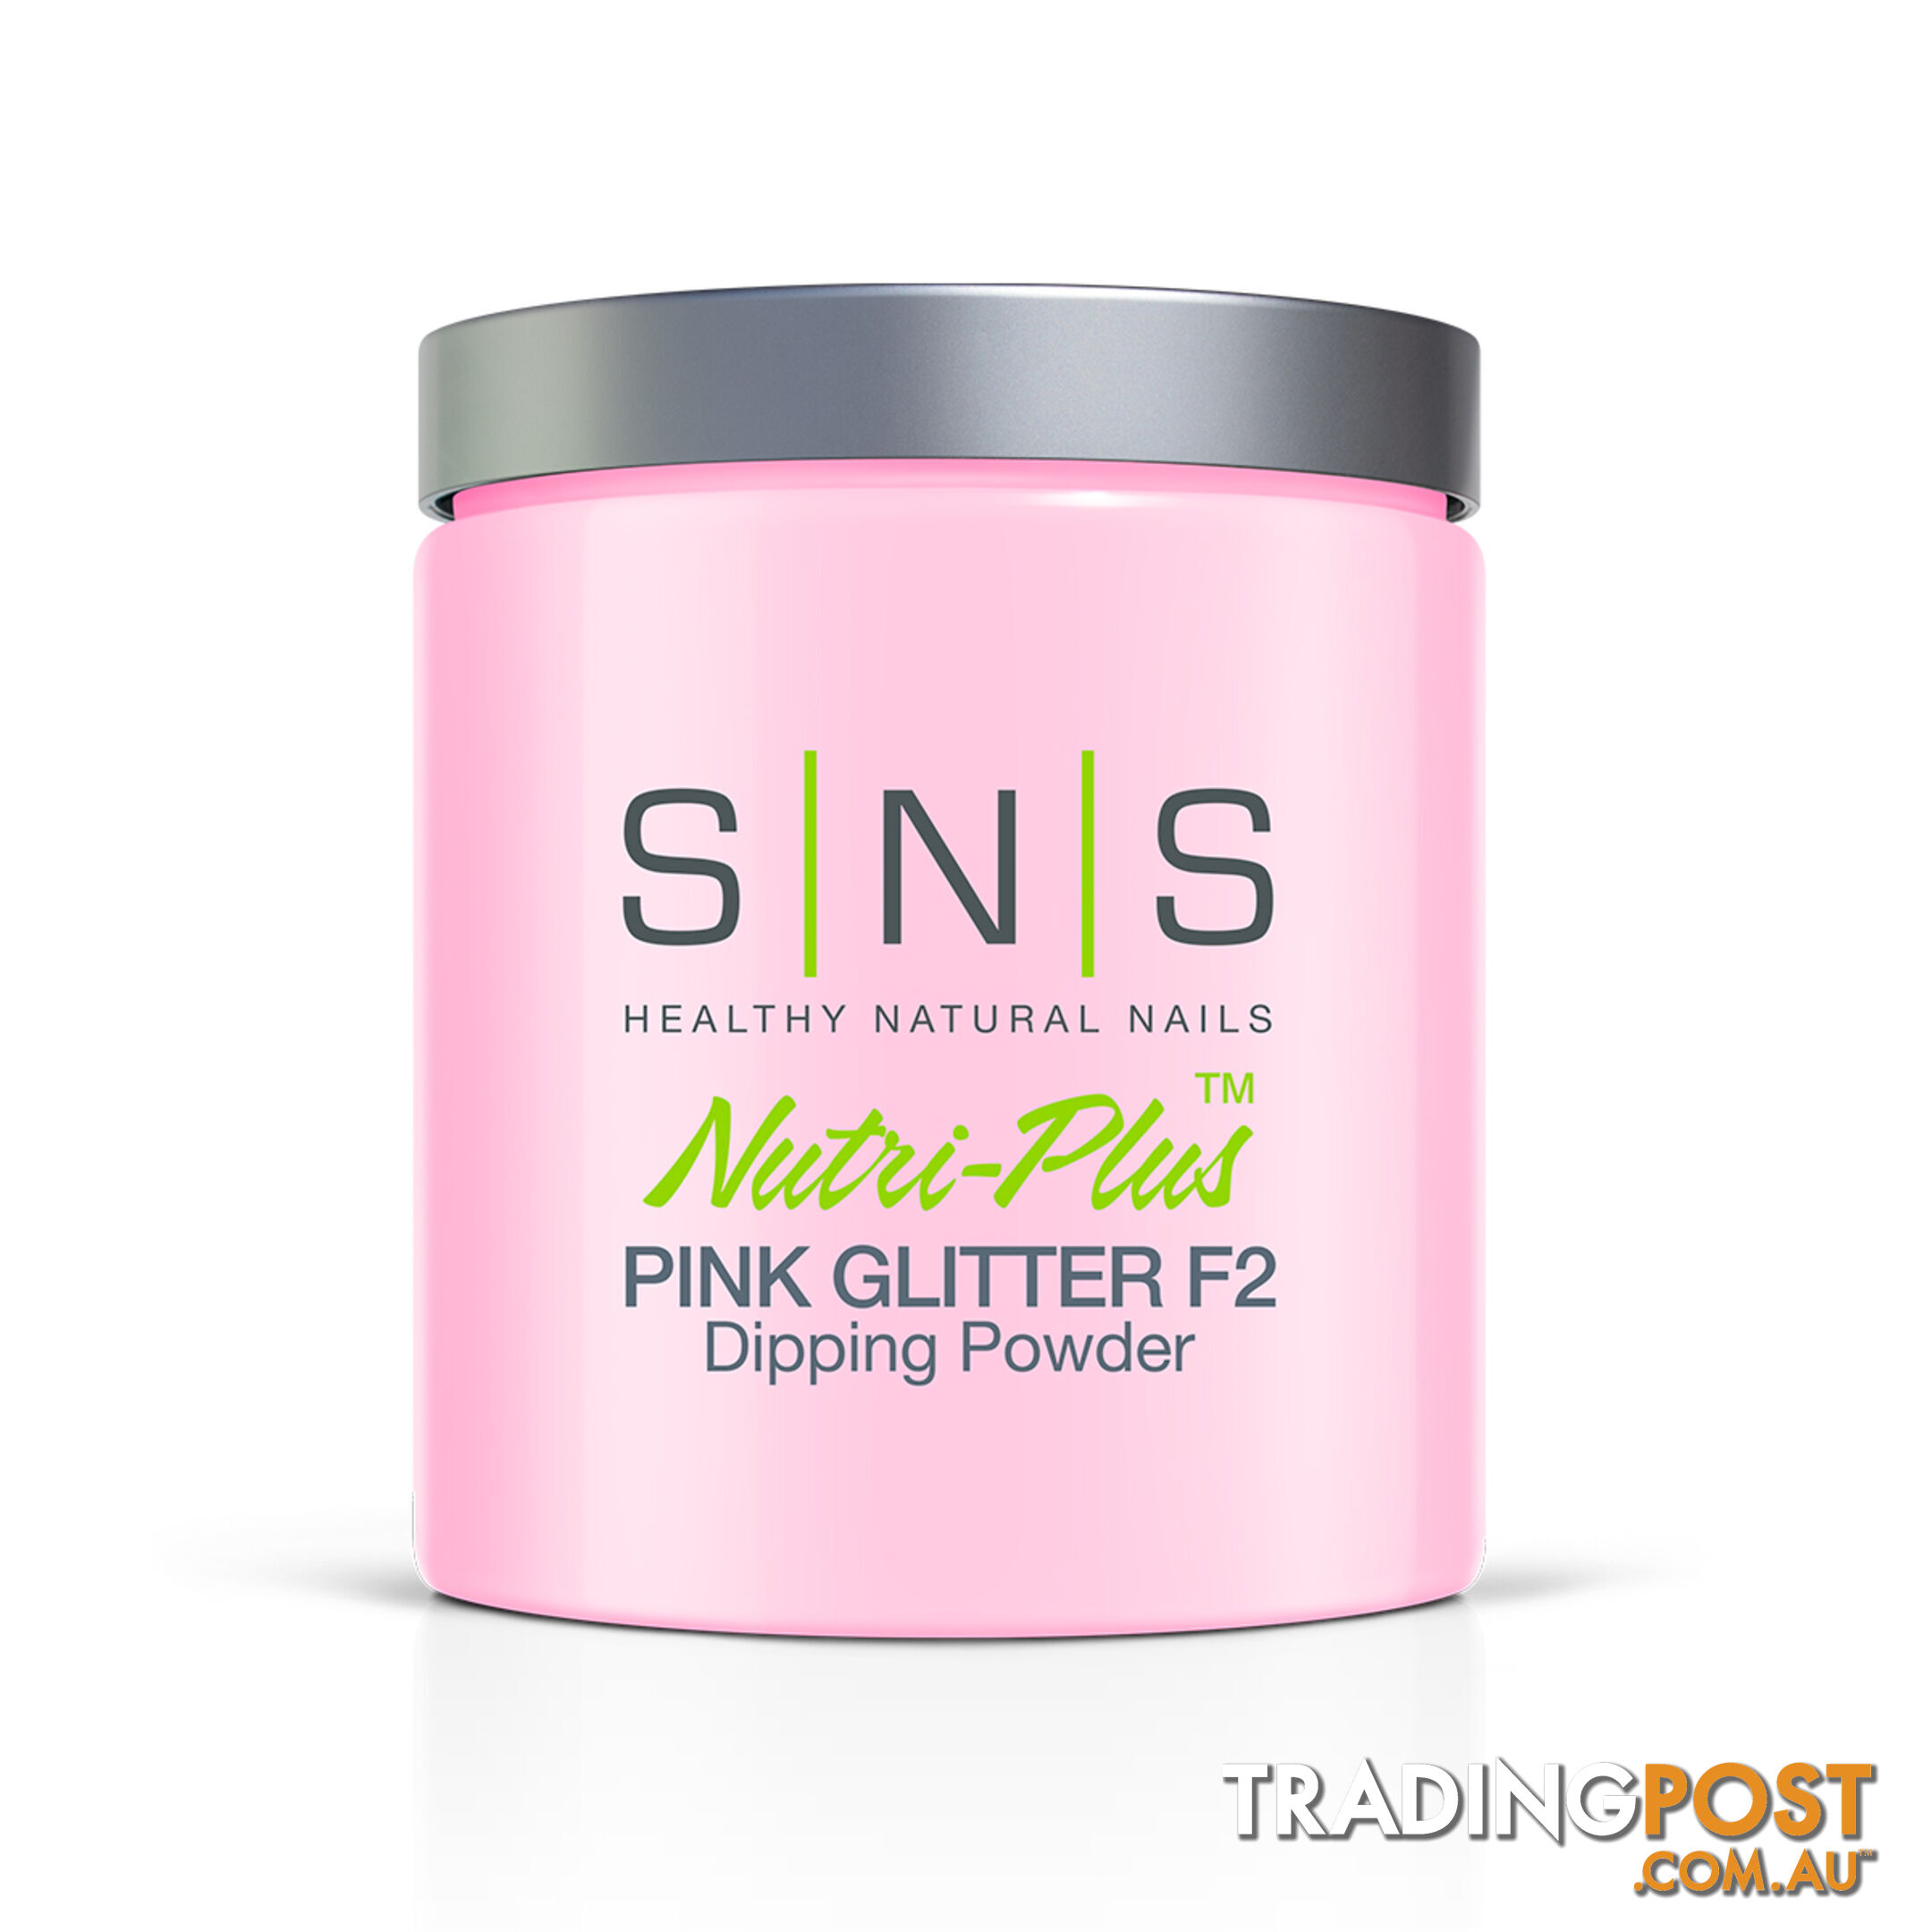 SNS Pink Glitter F2 (16oz) 448g - 635635735500